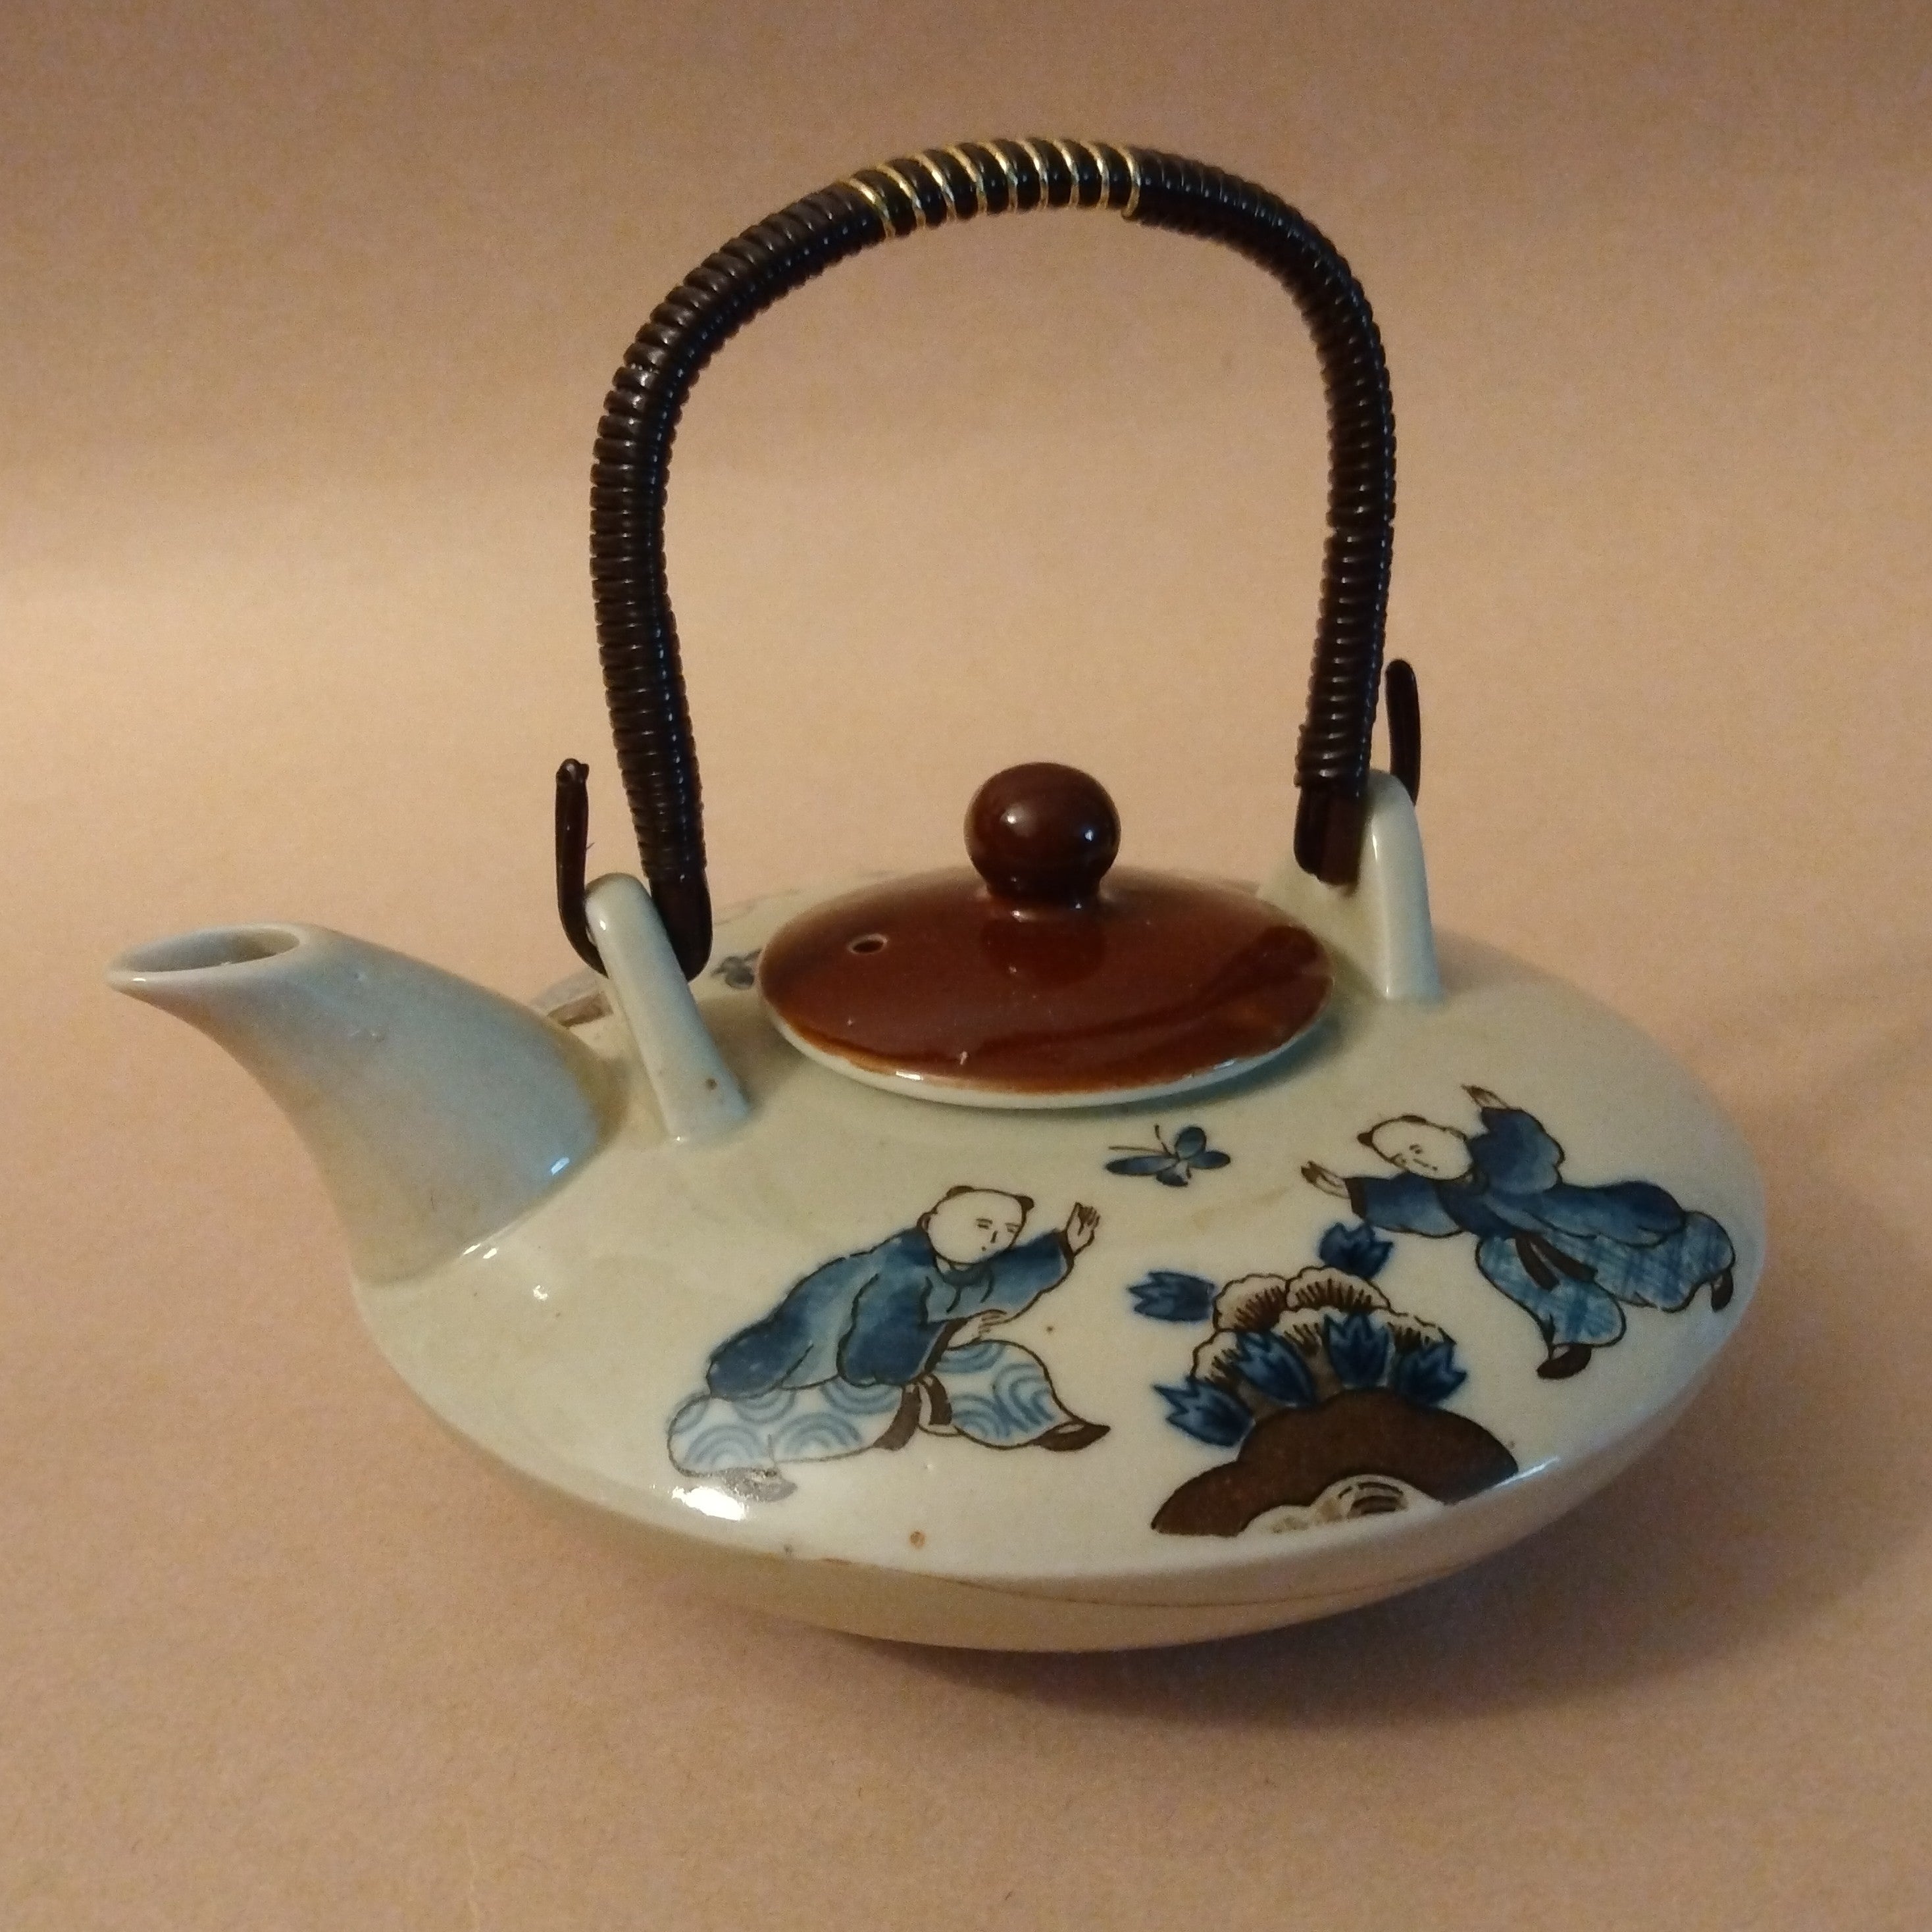 Choshi (Sake Ewer), Vintage; Thiel Collection